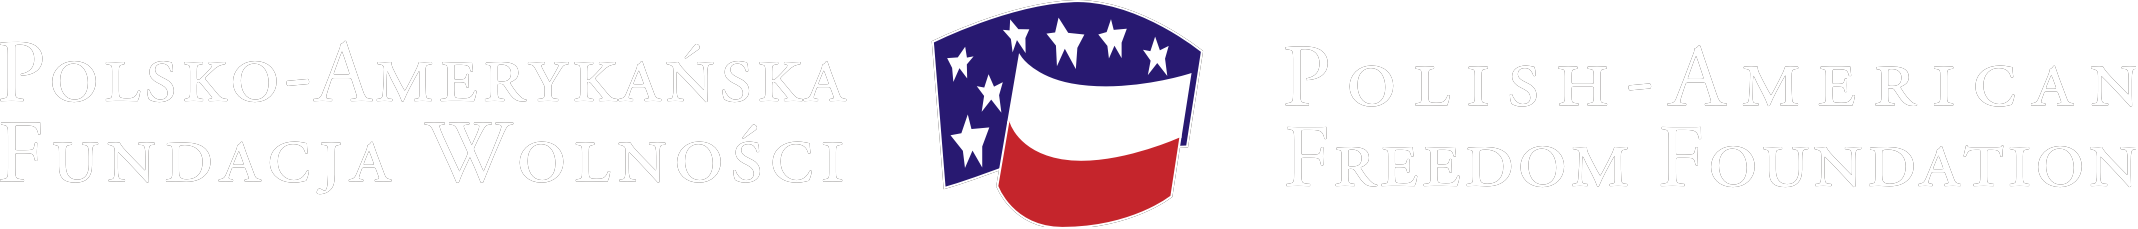 logo Polsko-Amerykańskiej Fundacji Wolności